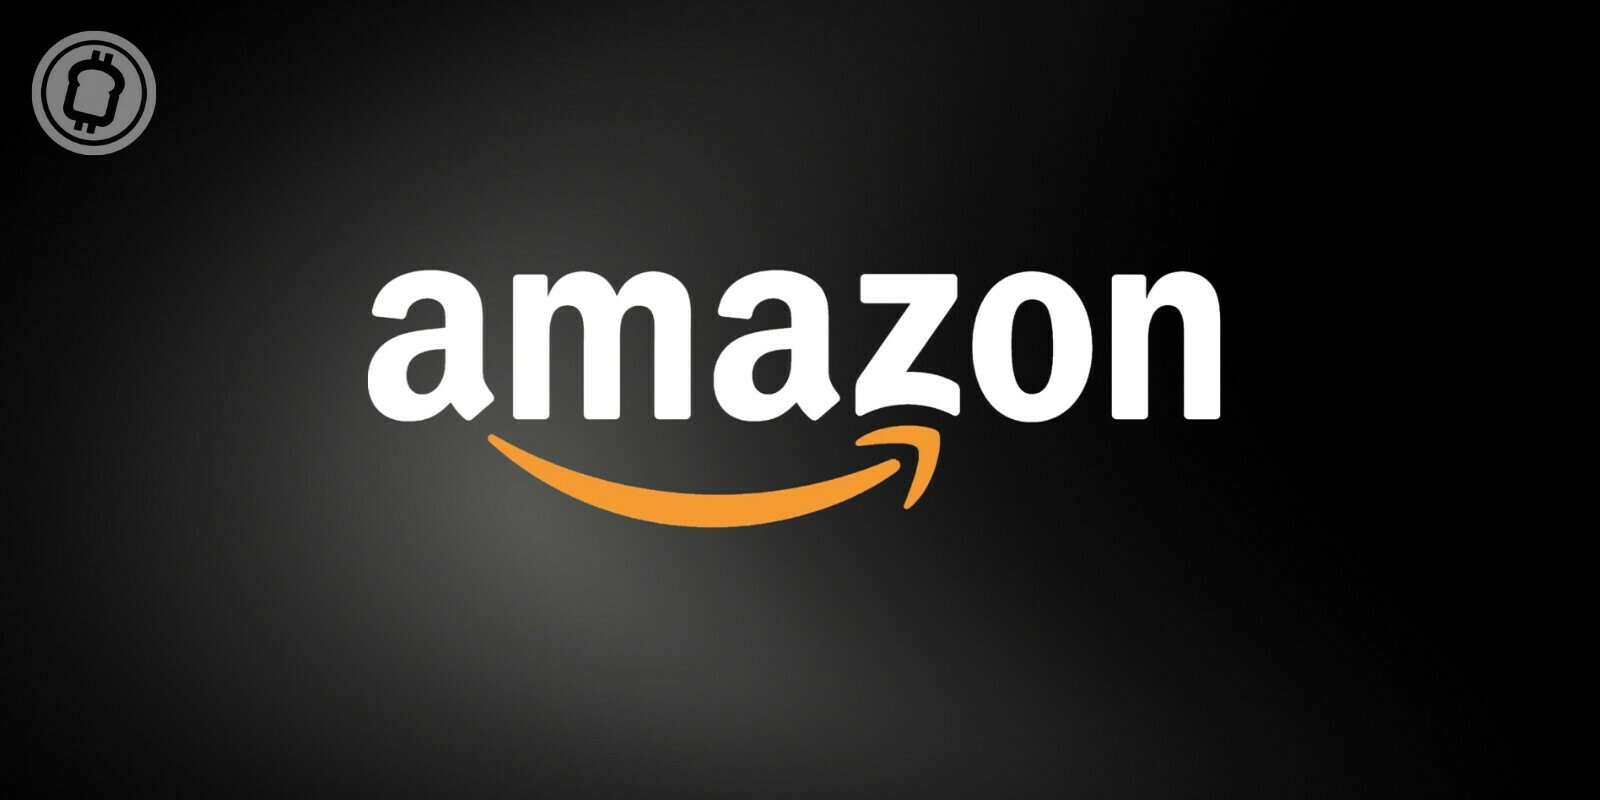 Amazon ne compte pas intégrer prochainement les cryptomonnaies, selon son PDG